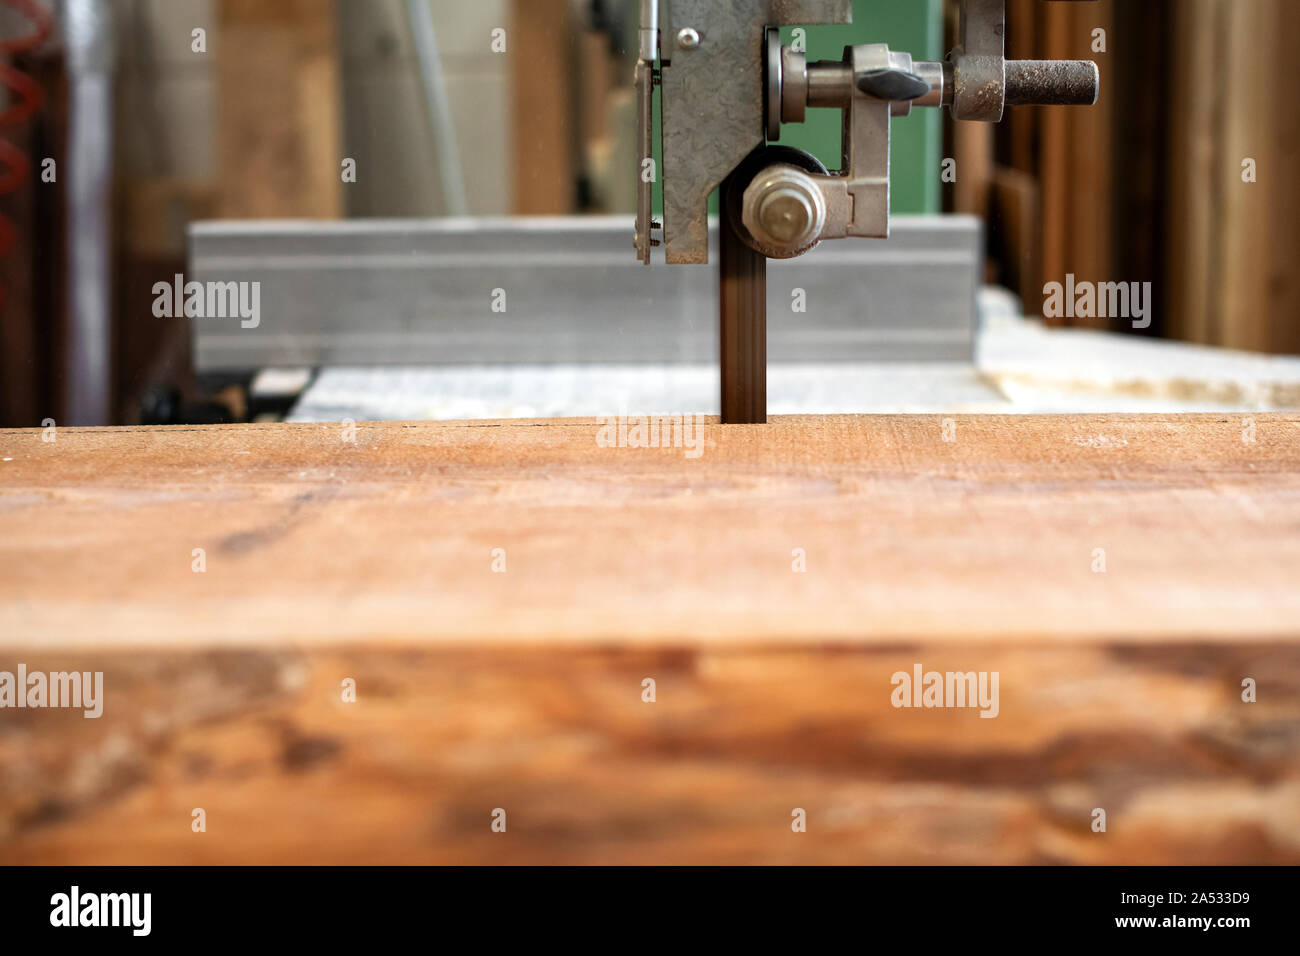 Scier du bois à l'aide d'une scie à ruban dans un atelier de menuiserie bois ou dans un gros plan sur la planche de bois et la bande de la scie Banque D'Images